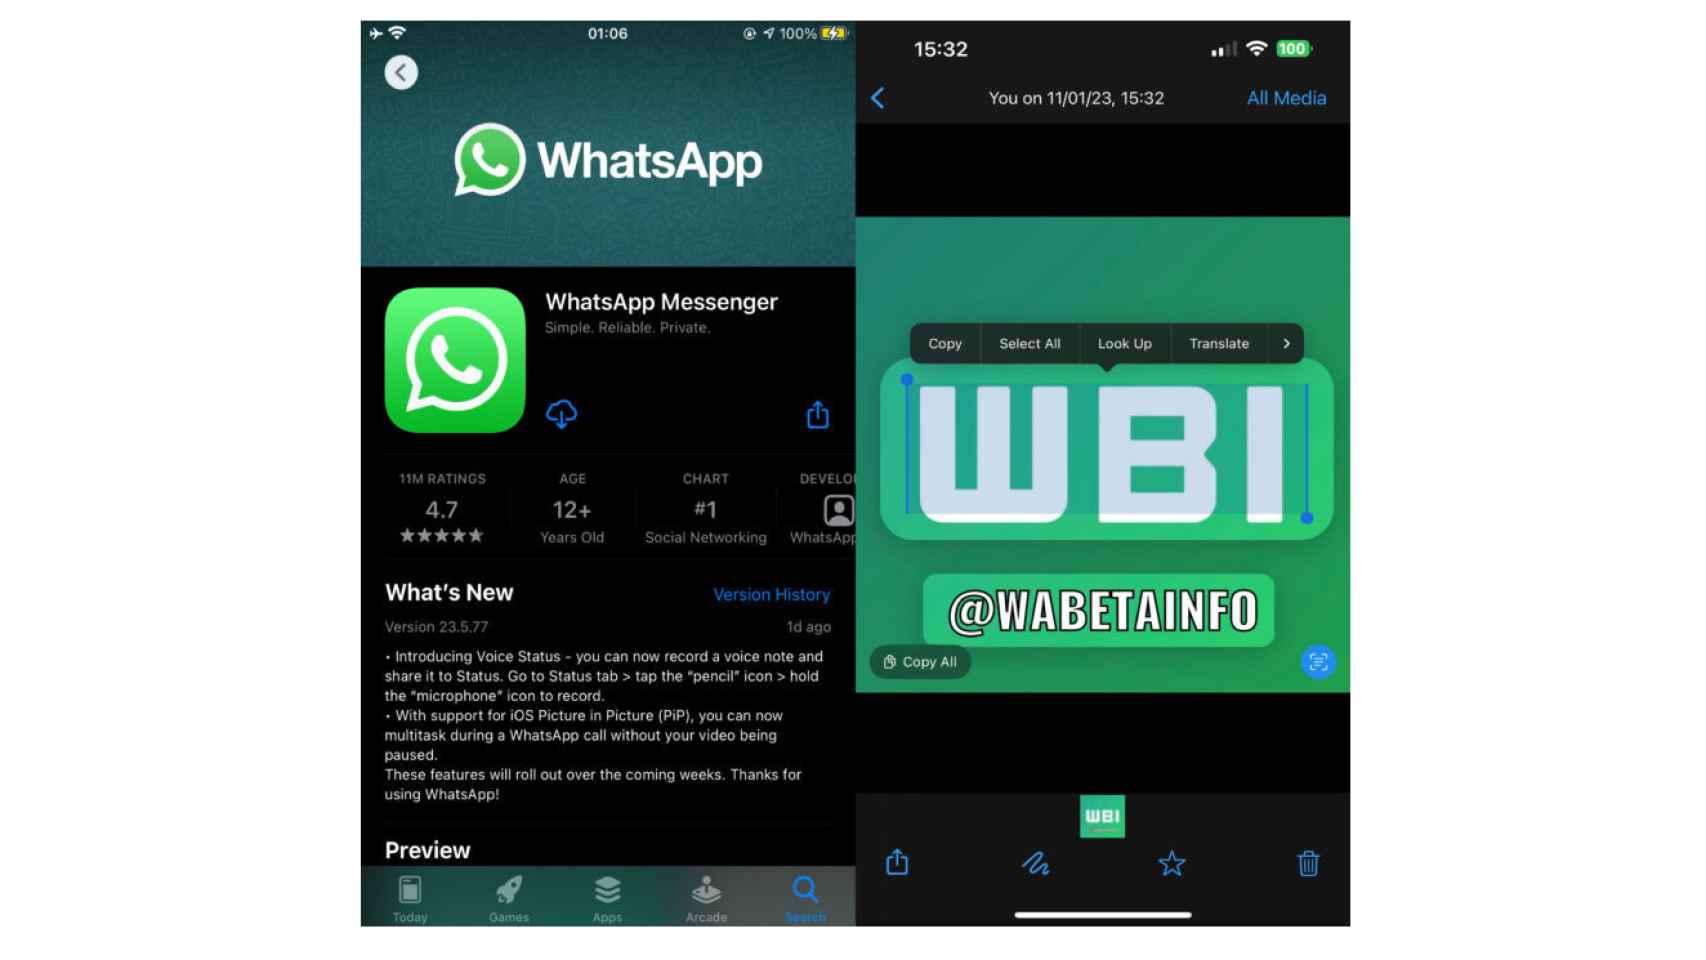 Función de WhatsApp para copiar texto en fotos